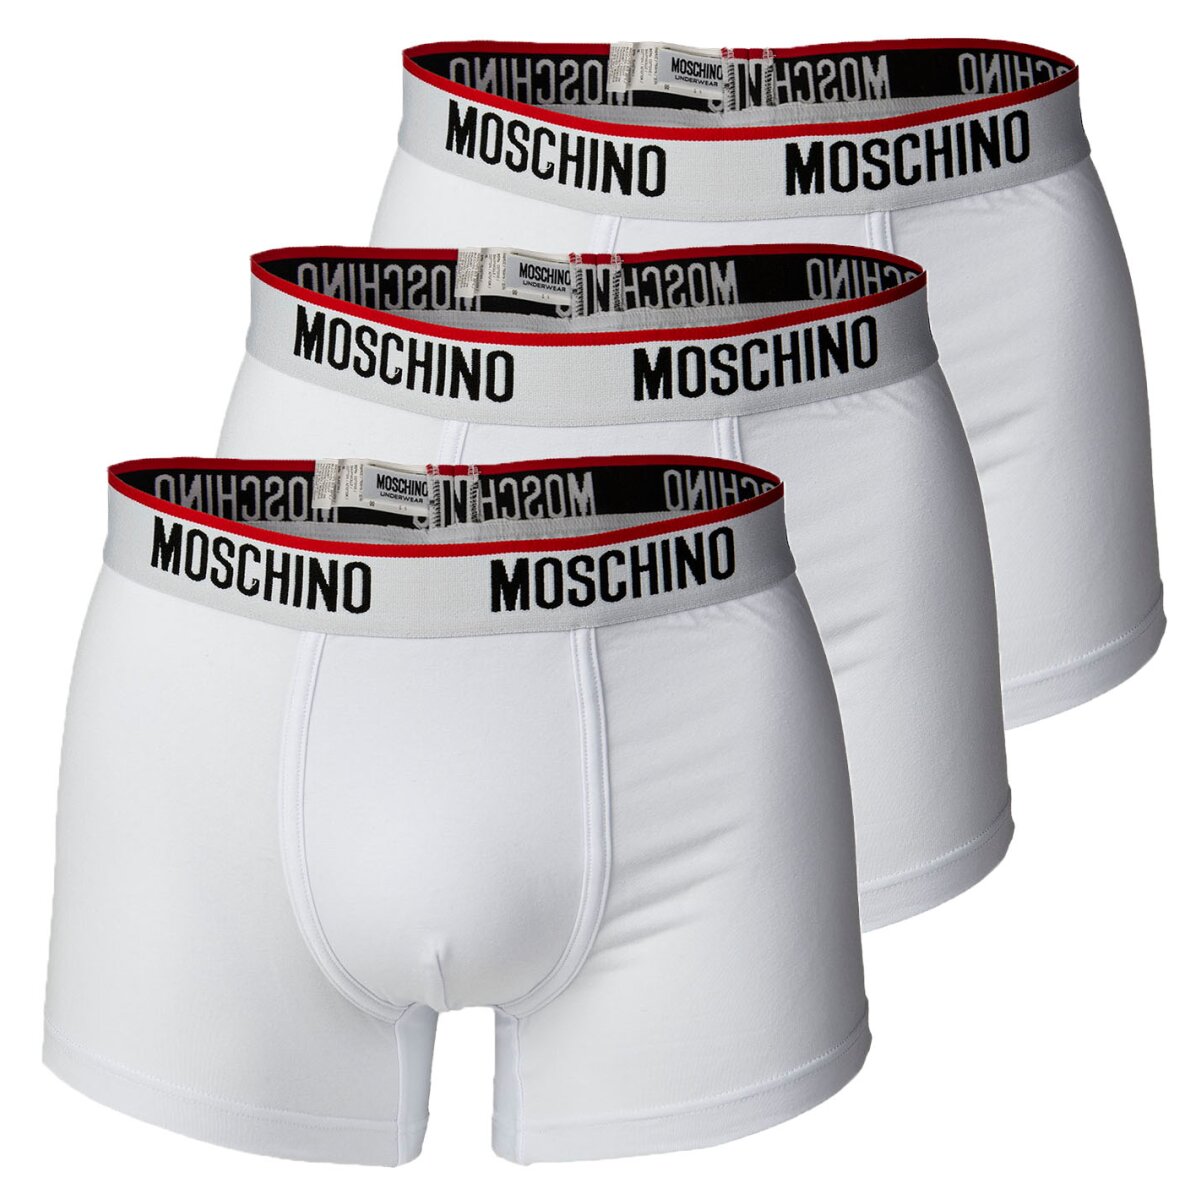 MOSCHINO Herren Shorts 3er Pack - Cotton Stretch, 53,95 €